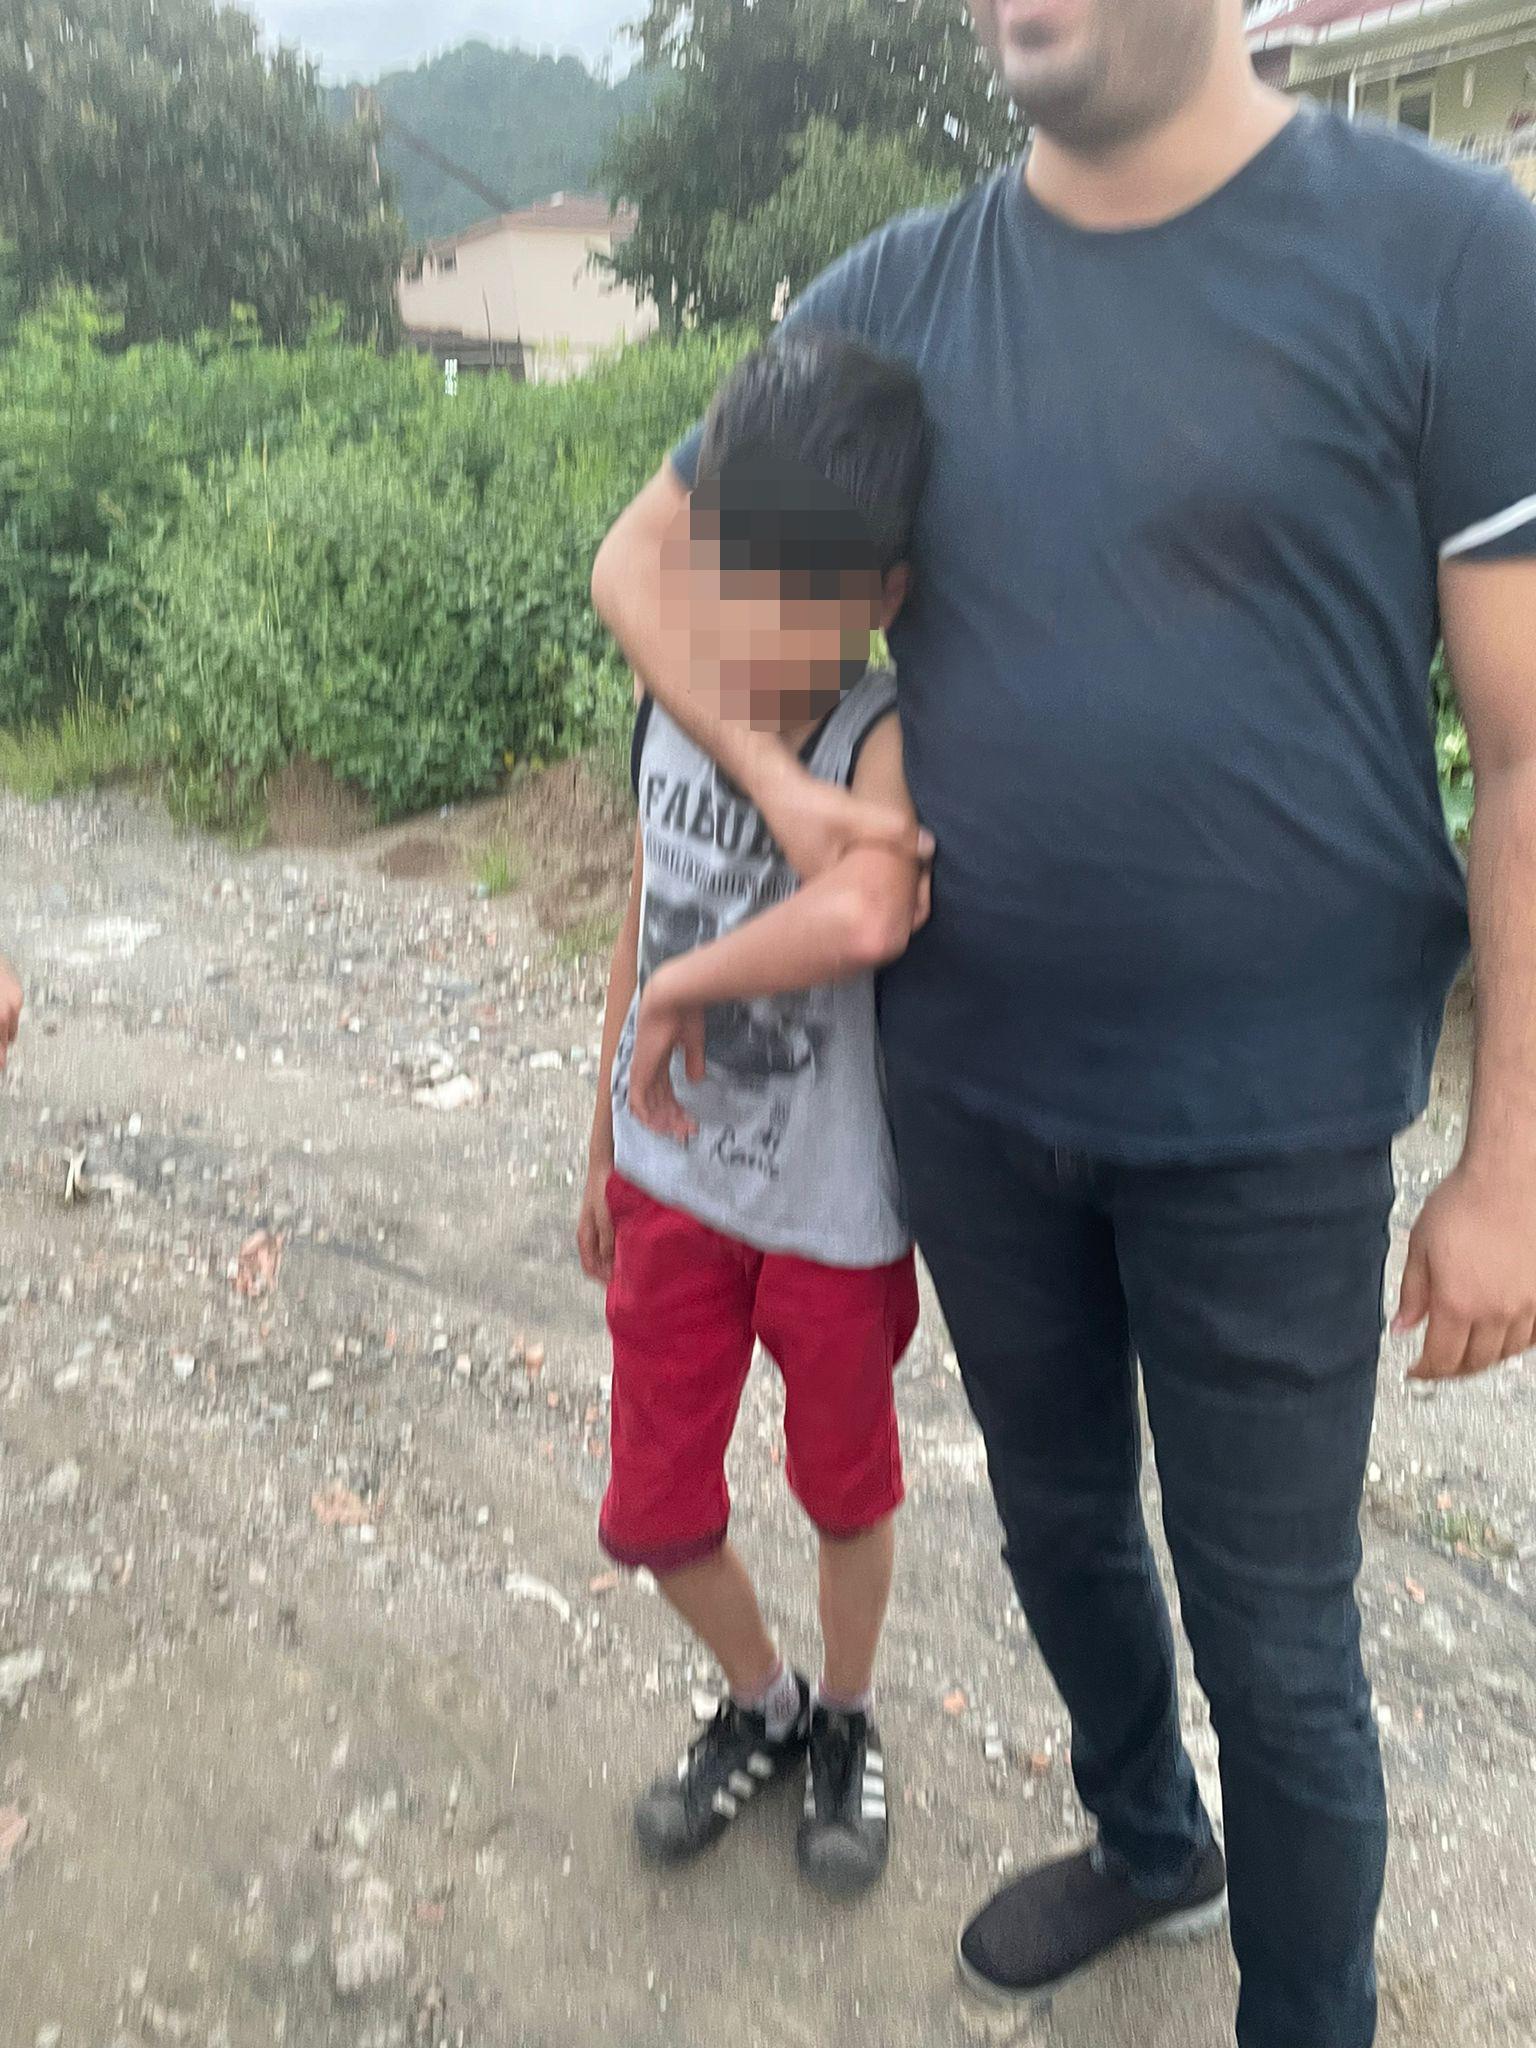 Akılalmaz olay Küçük çocuklar araba çaldı İstanbula kadar nasıl gidebildiler